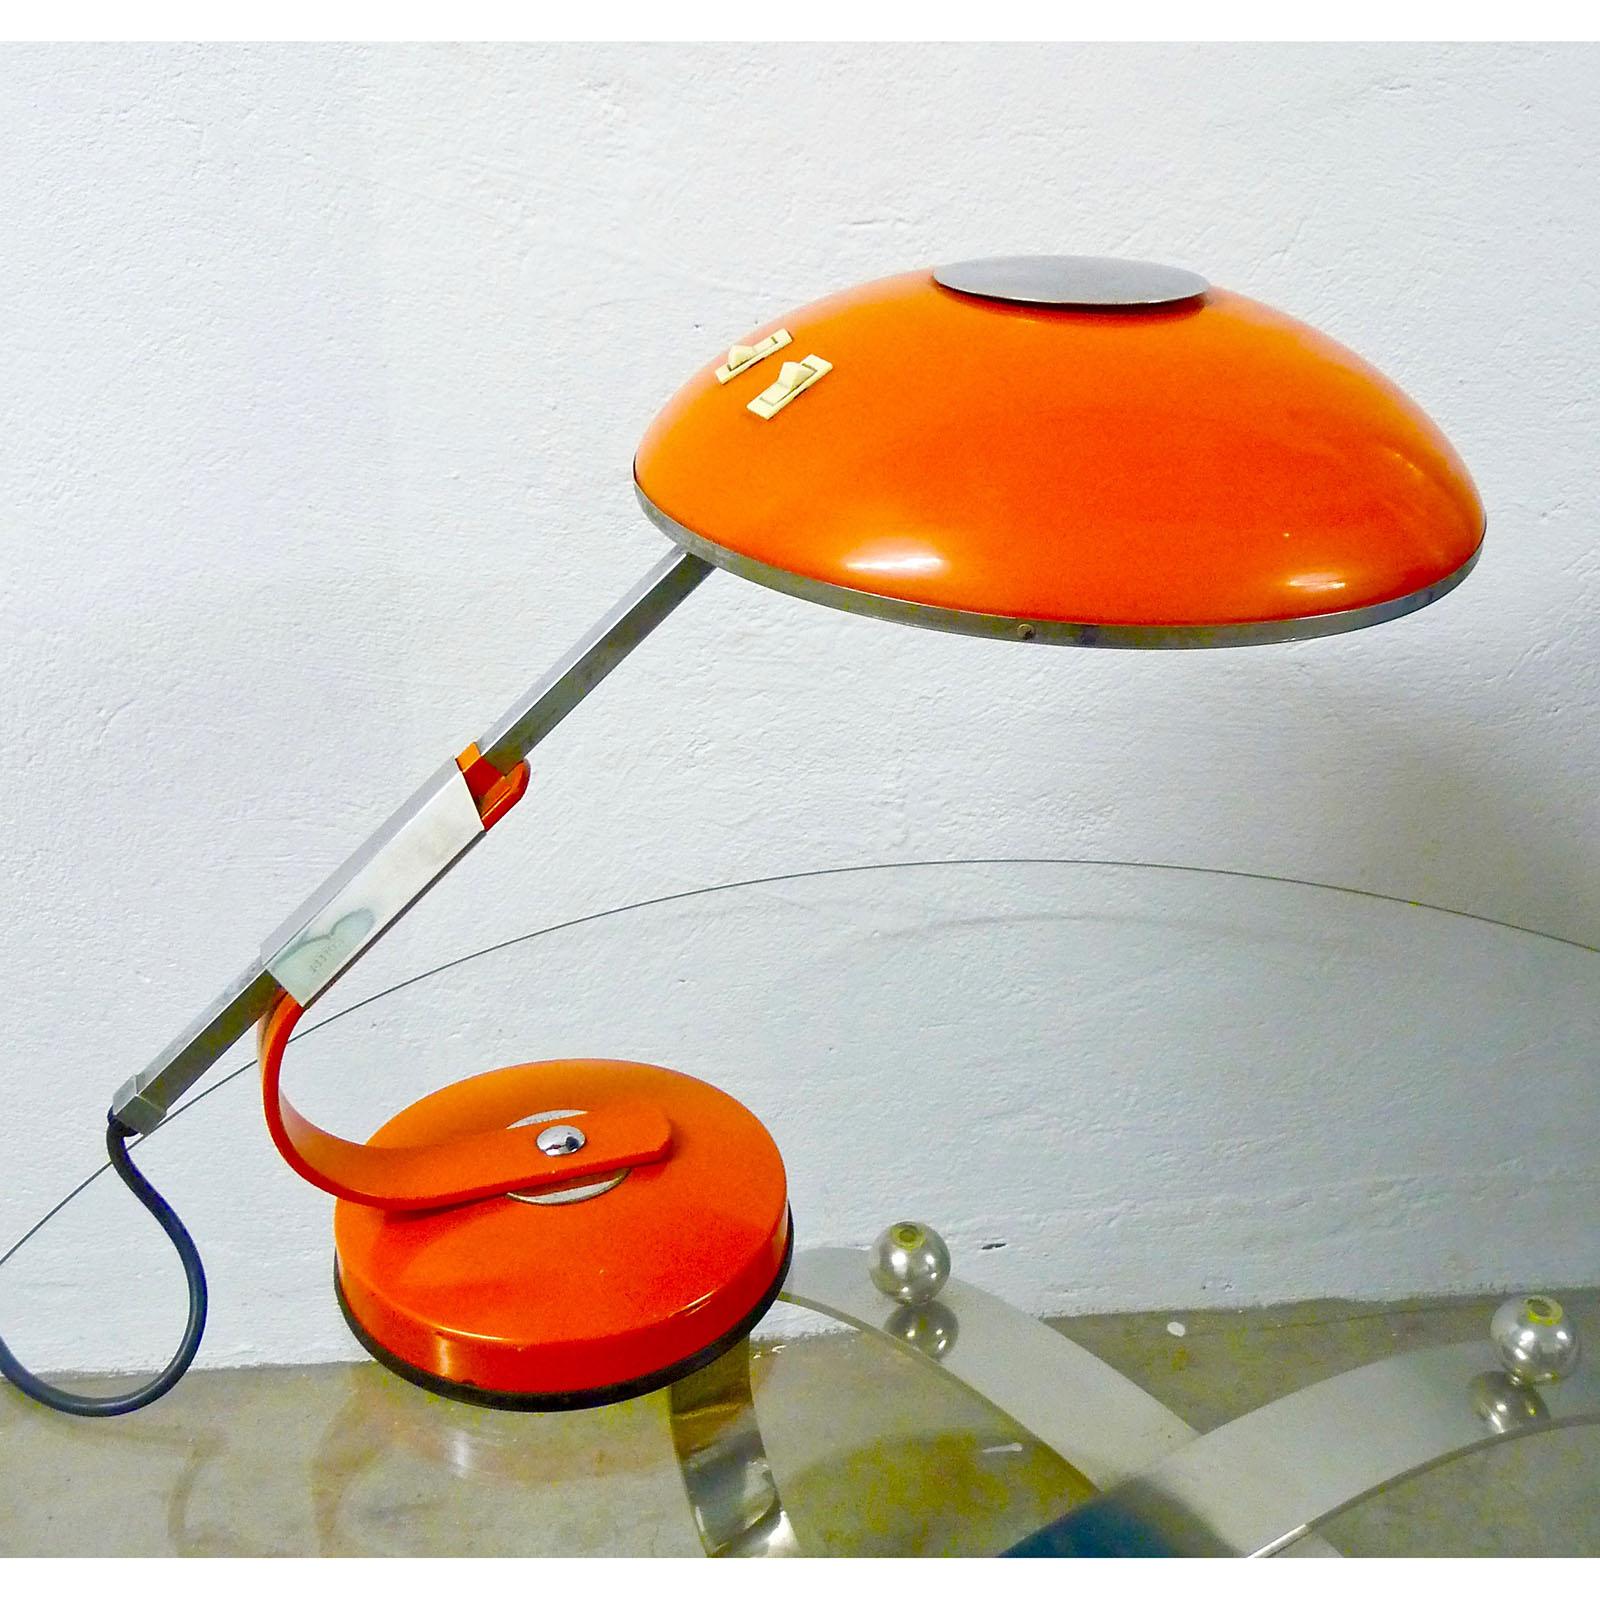 Schreibtischlampe aus der Mitte des Jahrhunderts, entworfen von Ferdinand Solere für SolR Paris, Frankreich, 1950er Jahre, orangefarben lackiertes Metall, mit einem ausziehbaren Arm aus rostfreiem Stahl, der die Lampe verlängert.
Die Lichtquelle